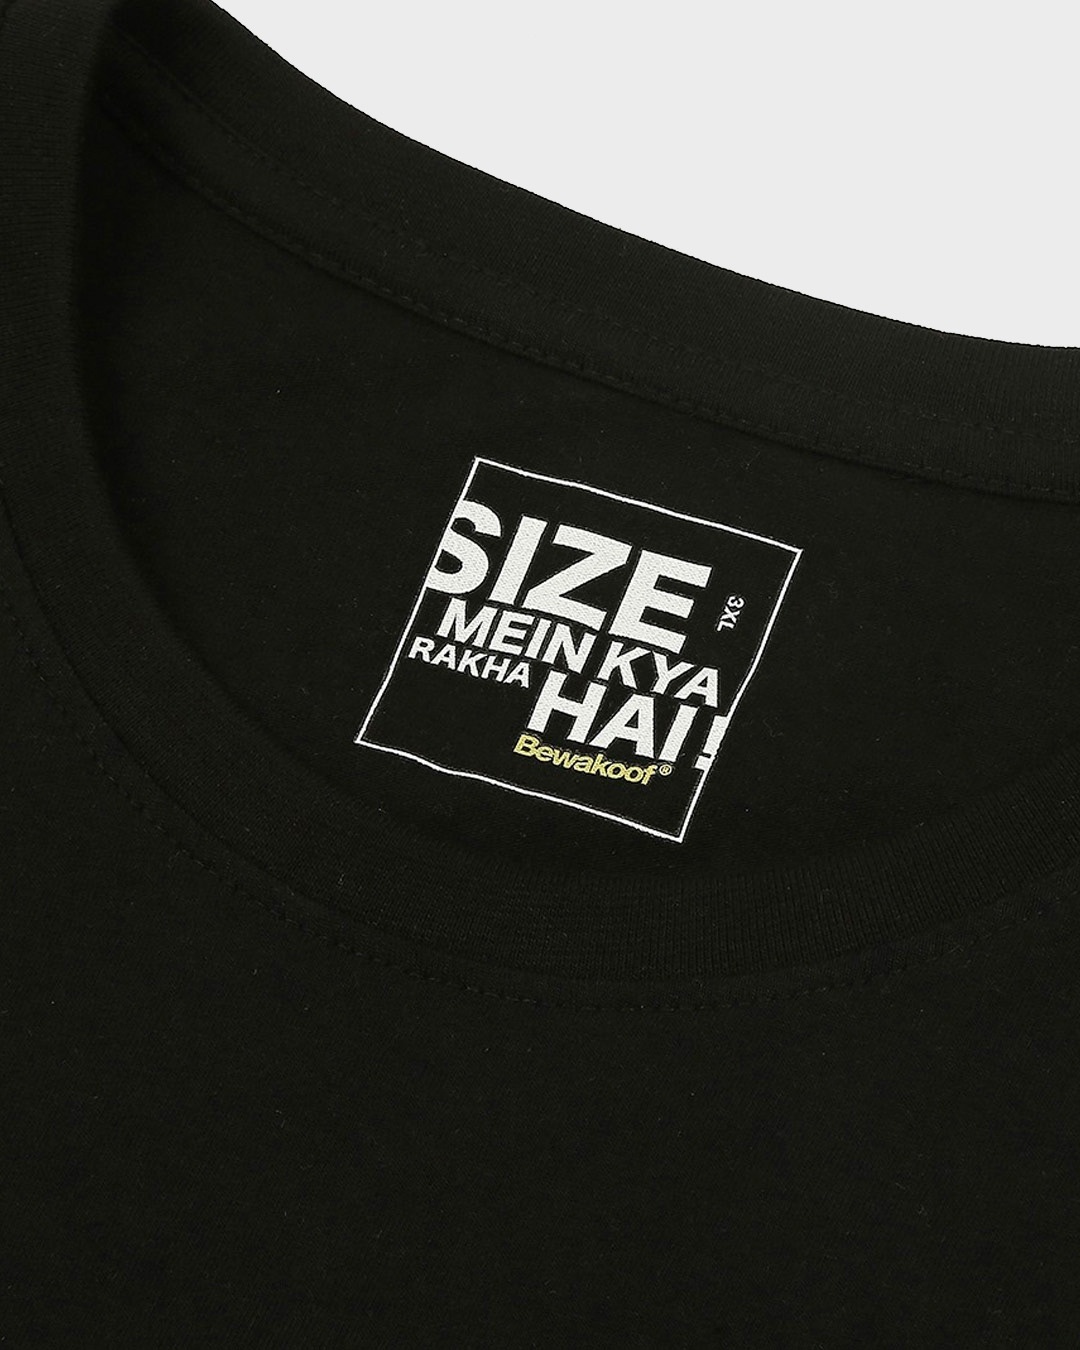 Shop Click Click Bugs Boyfriend Plus Size T-Shirt (LTL)